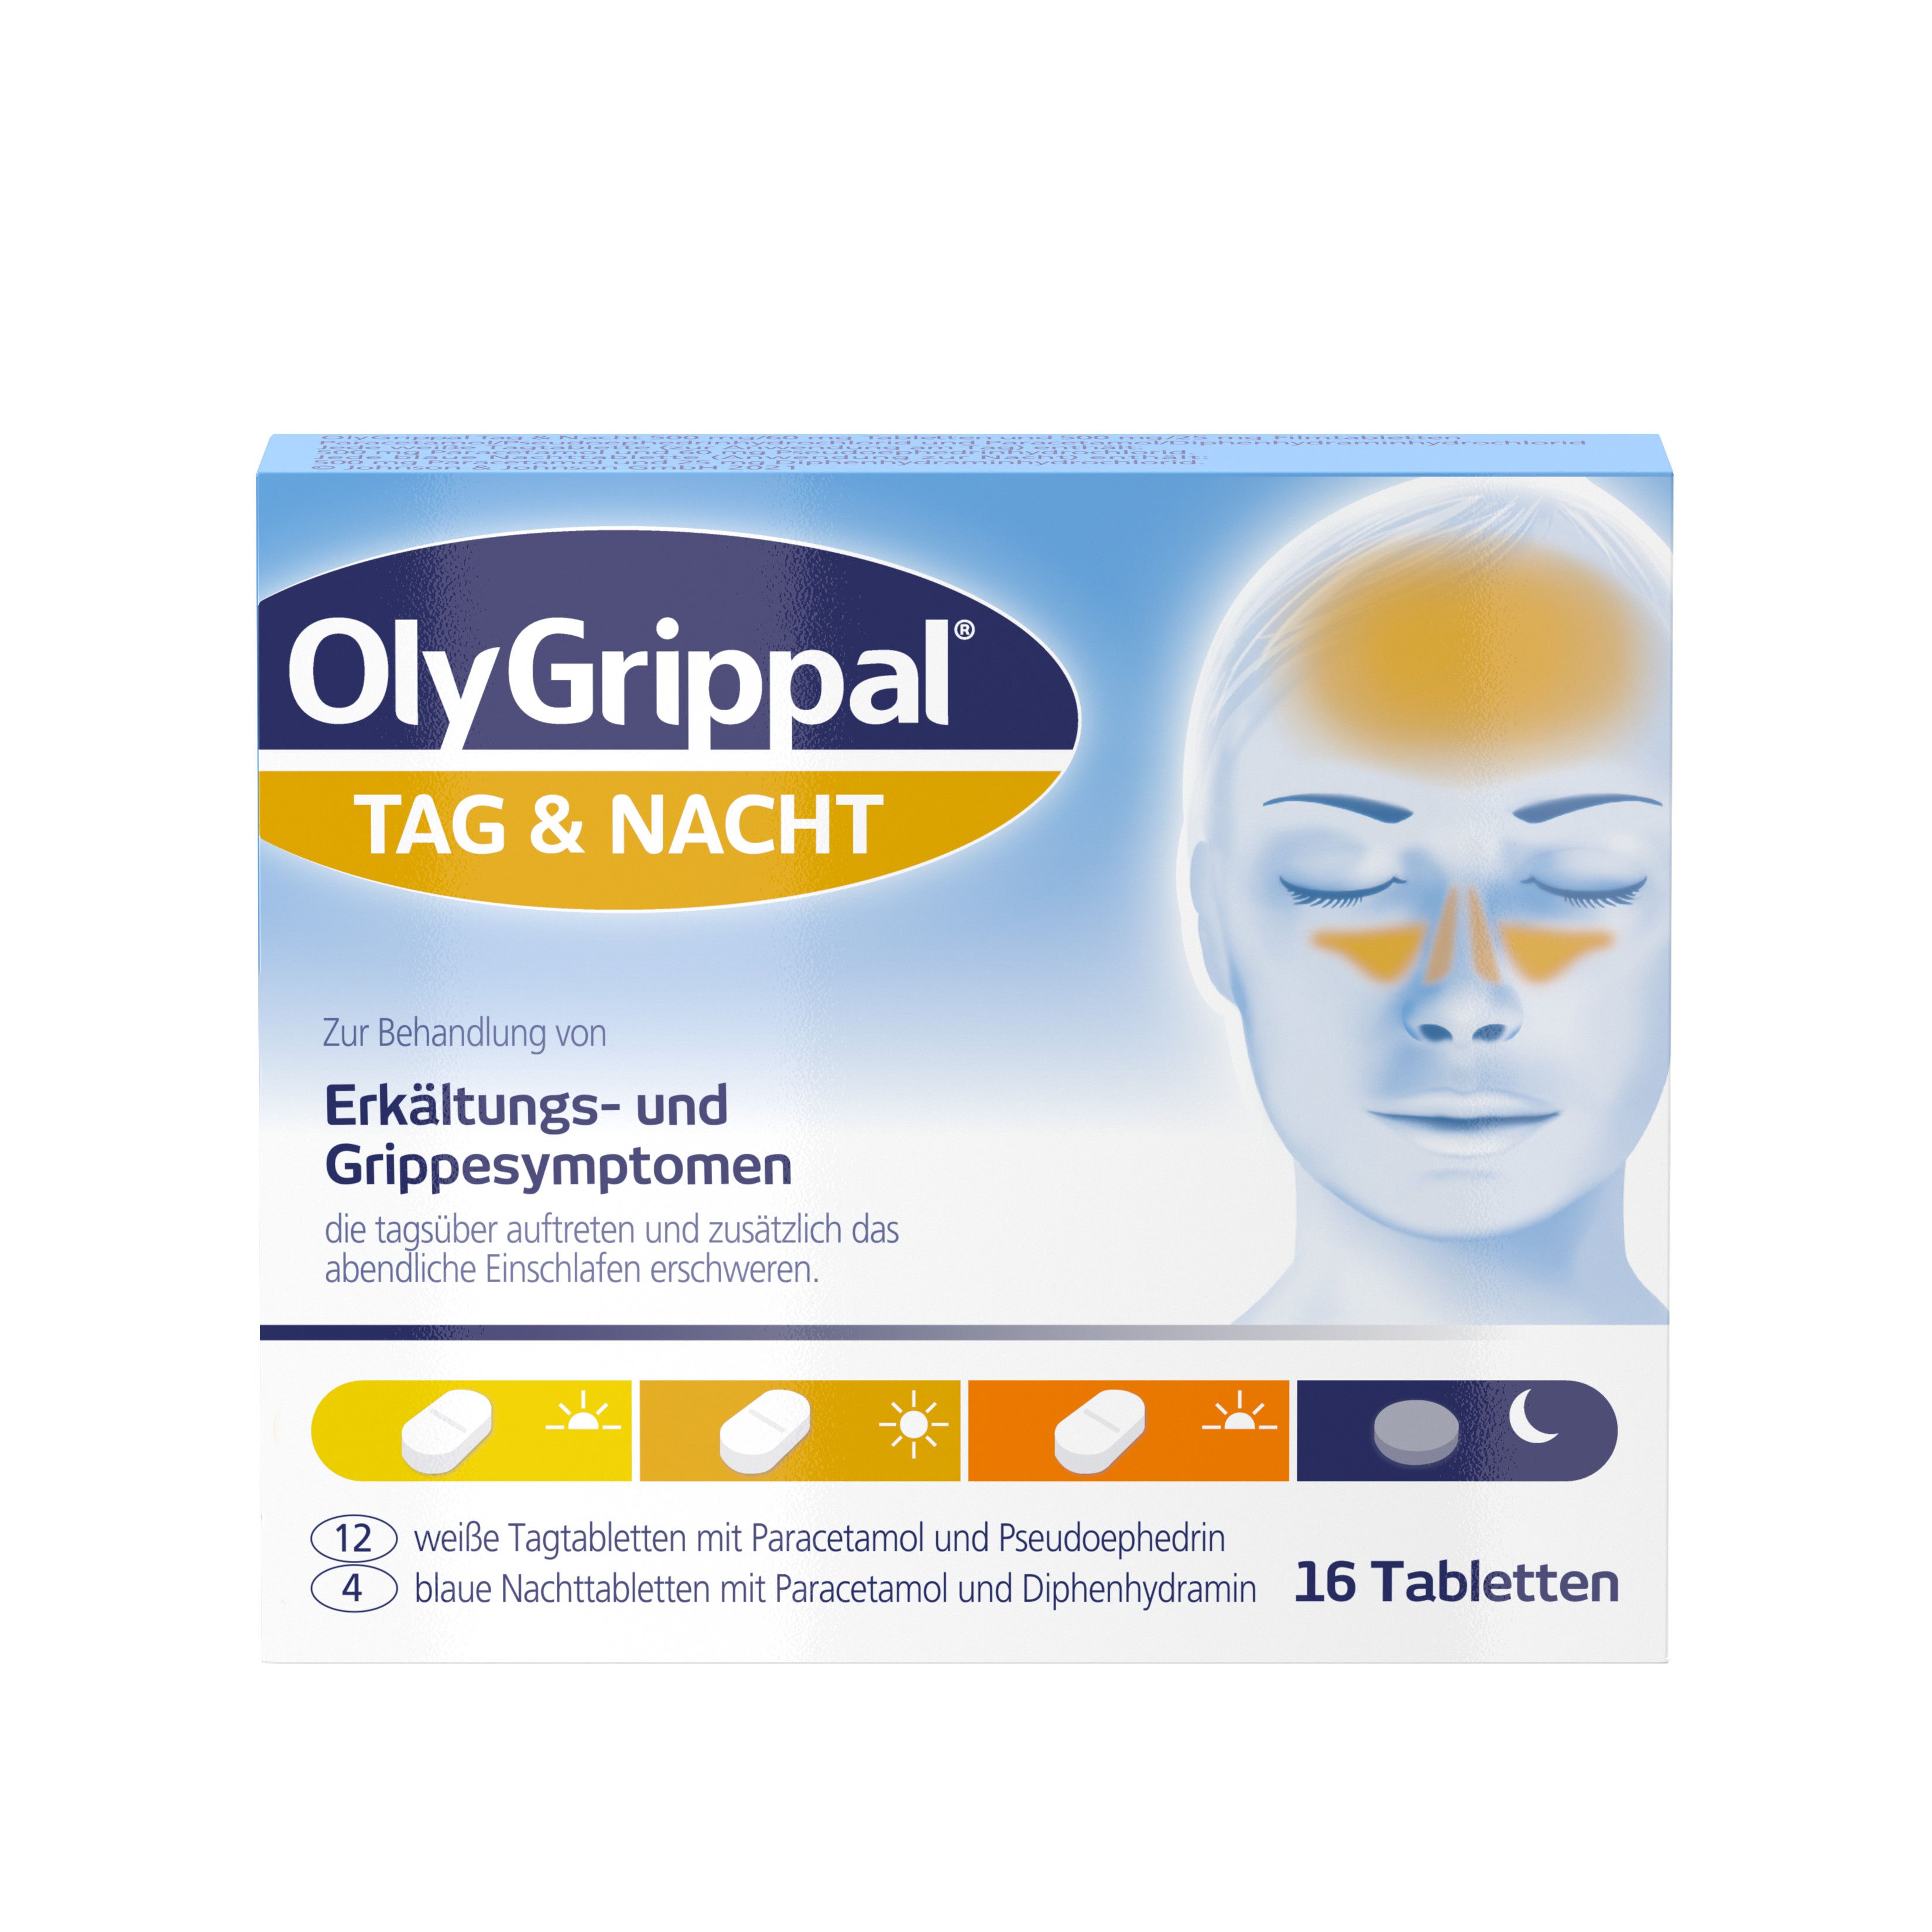 OLYGRIPPAL Tag & Nacht 500 mg/60 mg Tabletten für den Tag und die Nacht zur Behanldung von Erkältungs- und Grippesymptomen